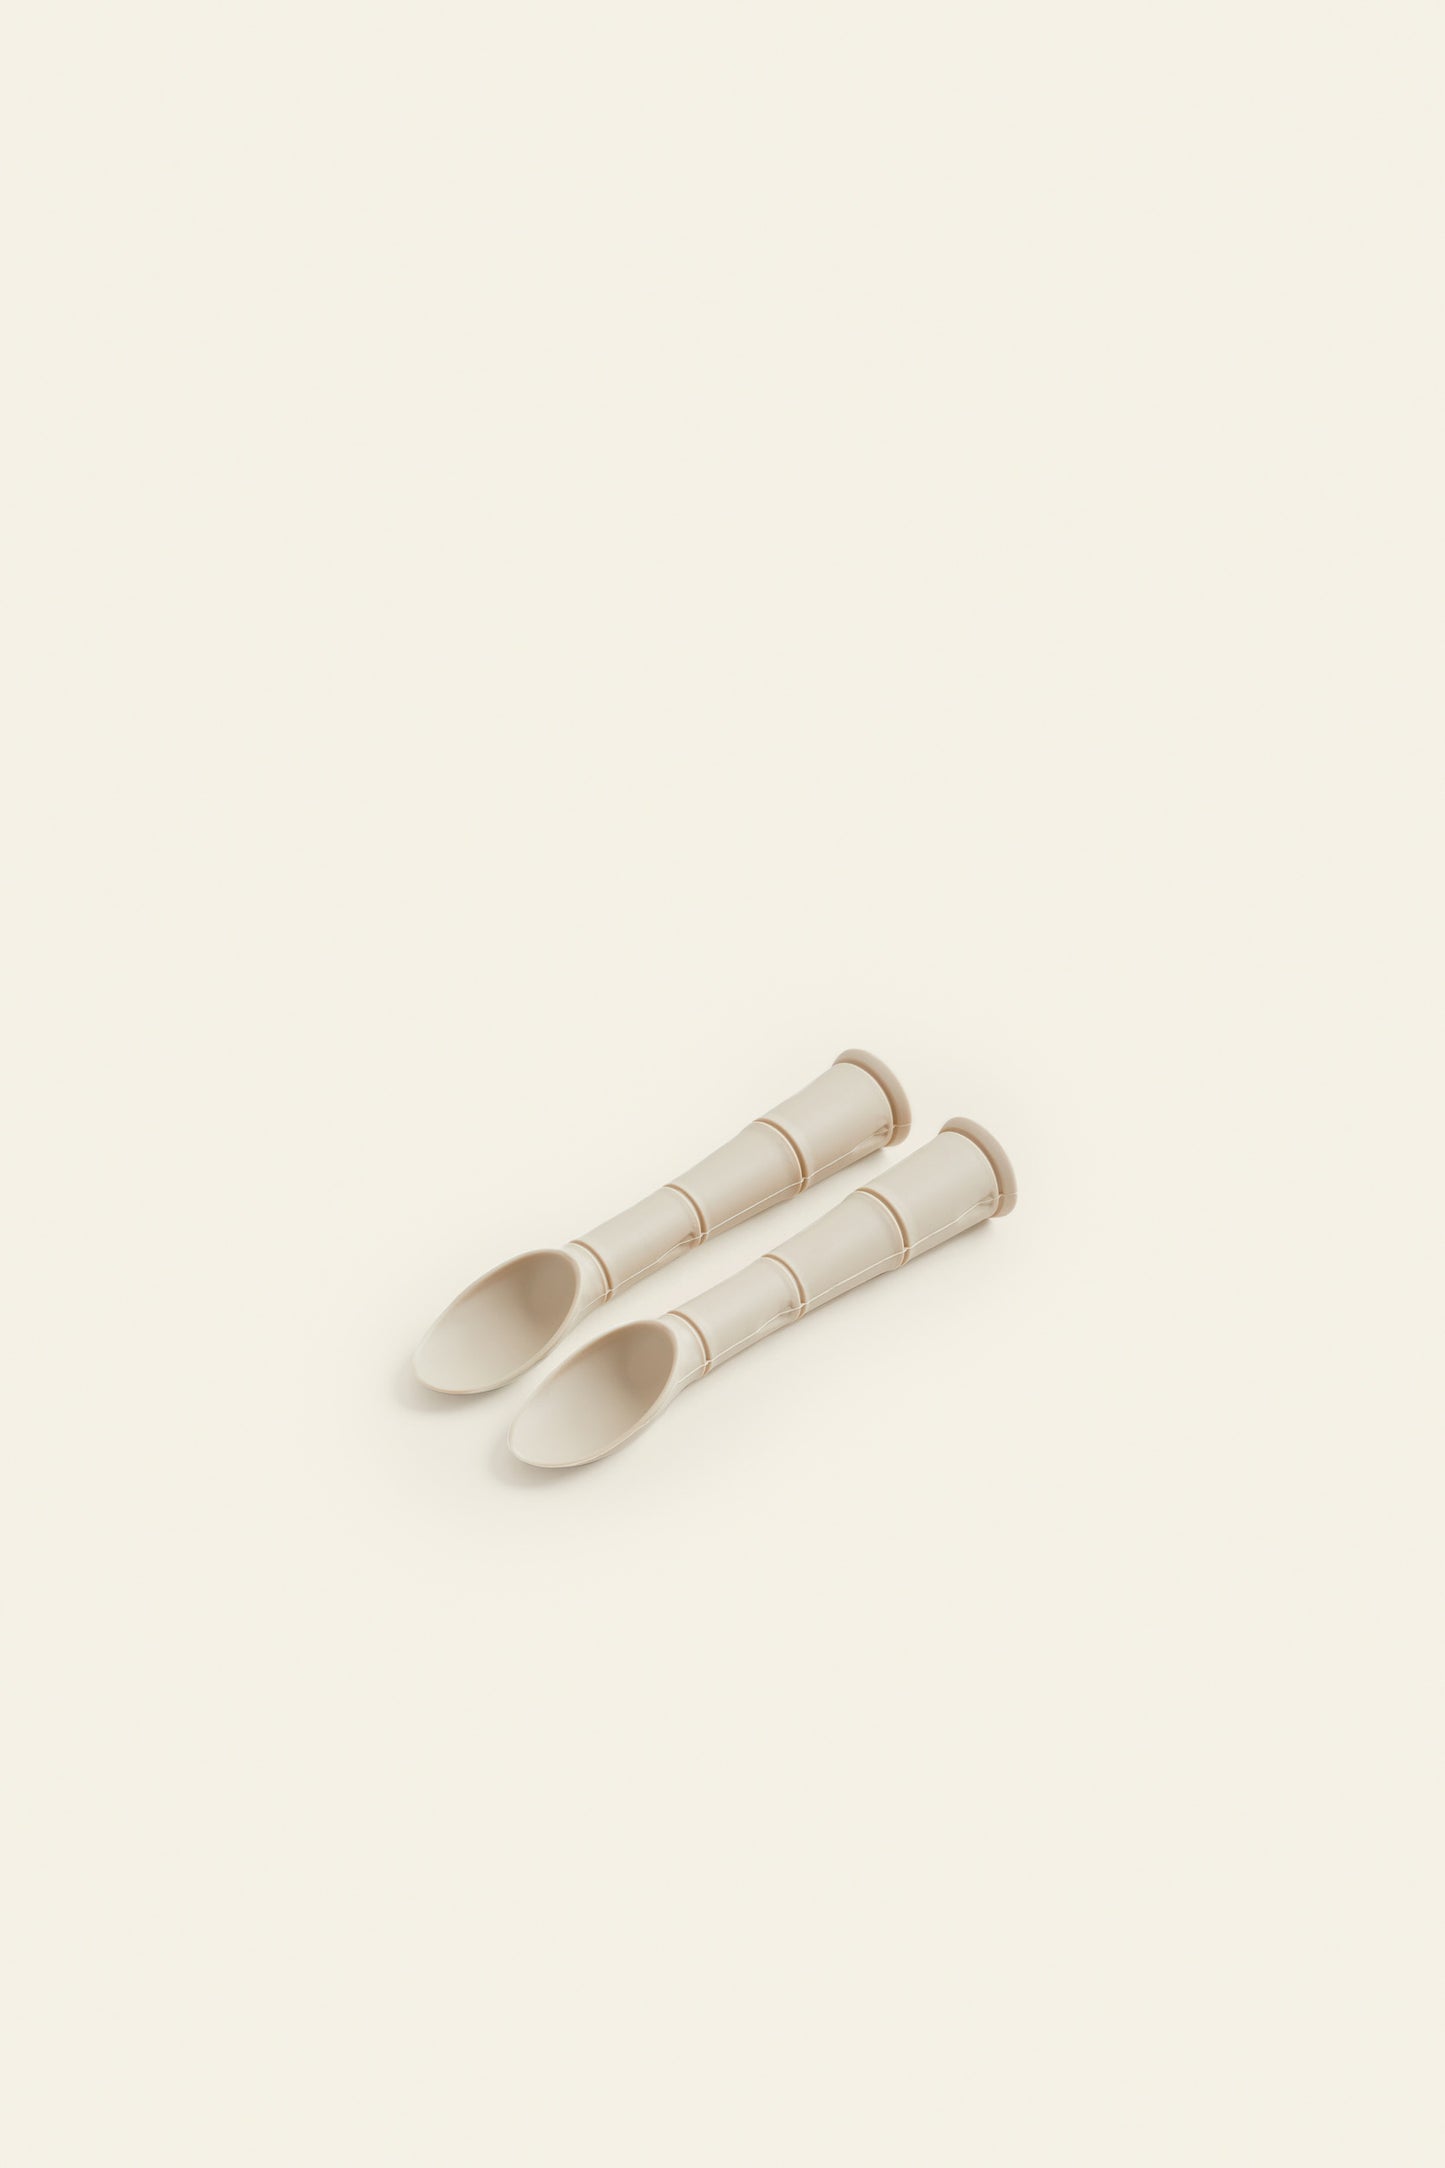 Starter Spoons